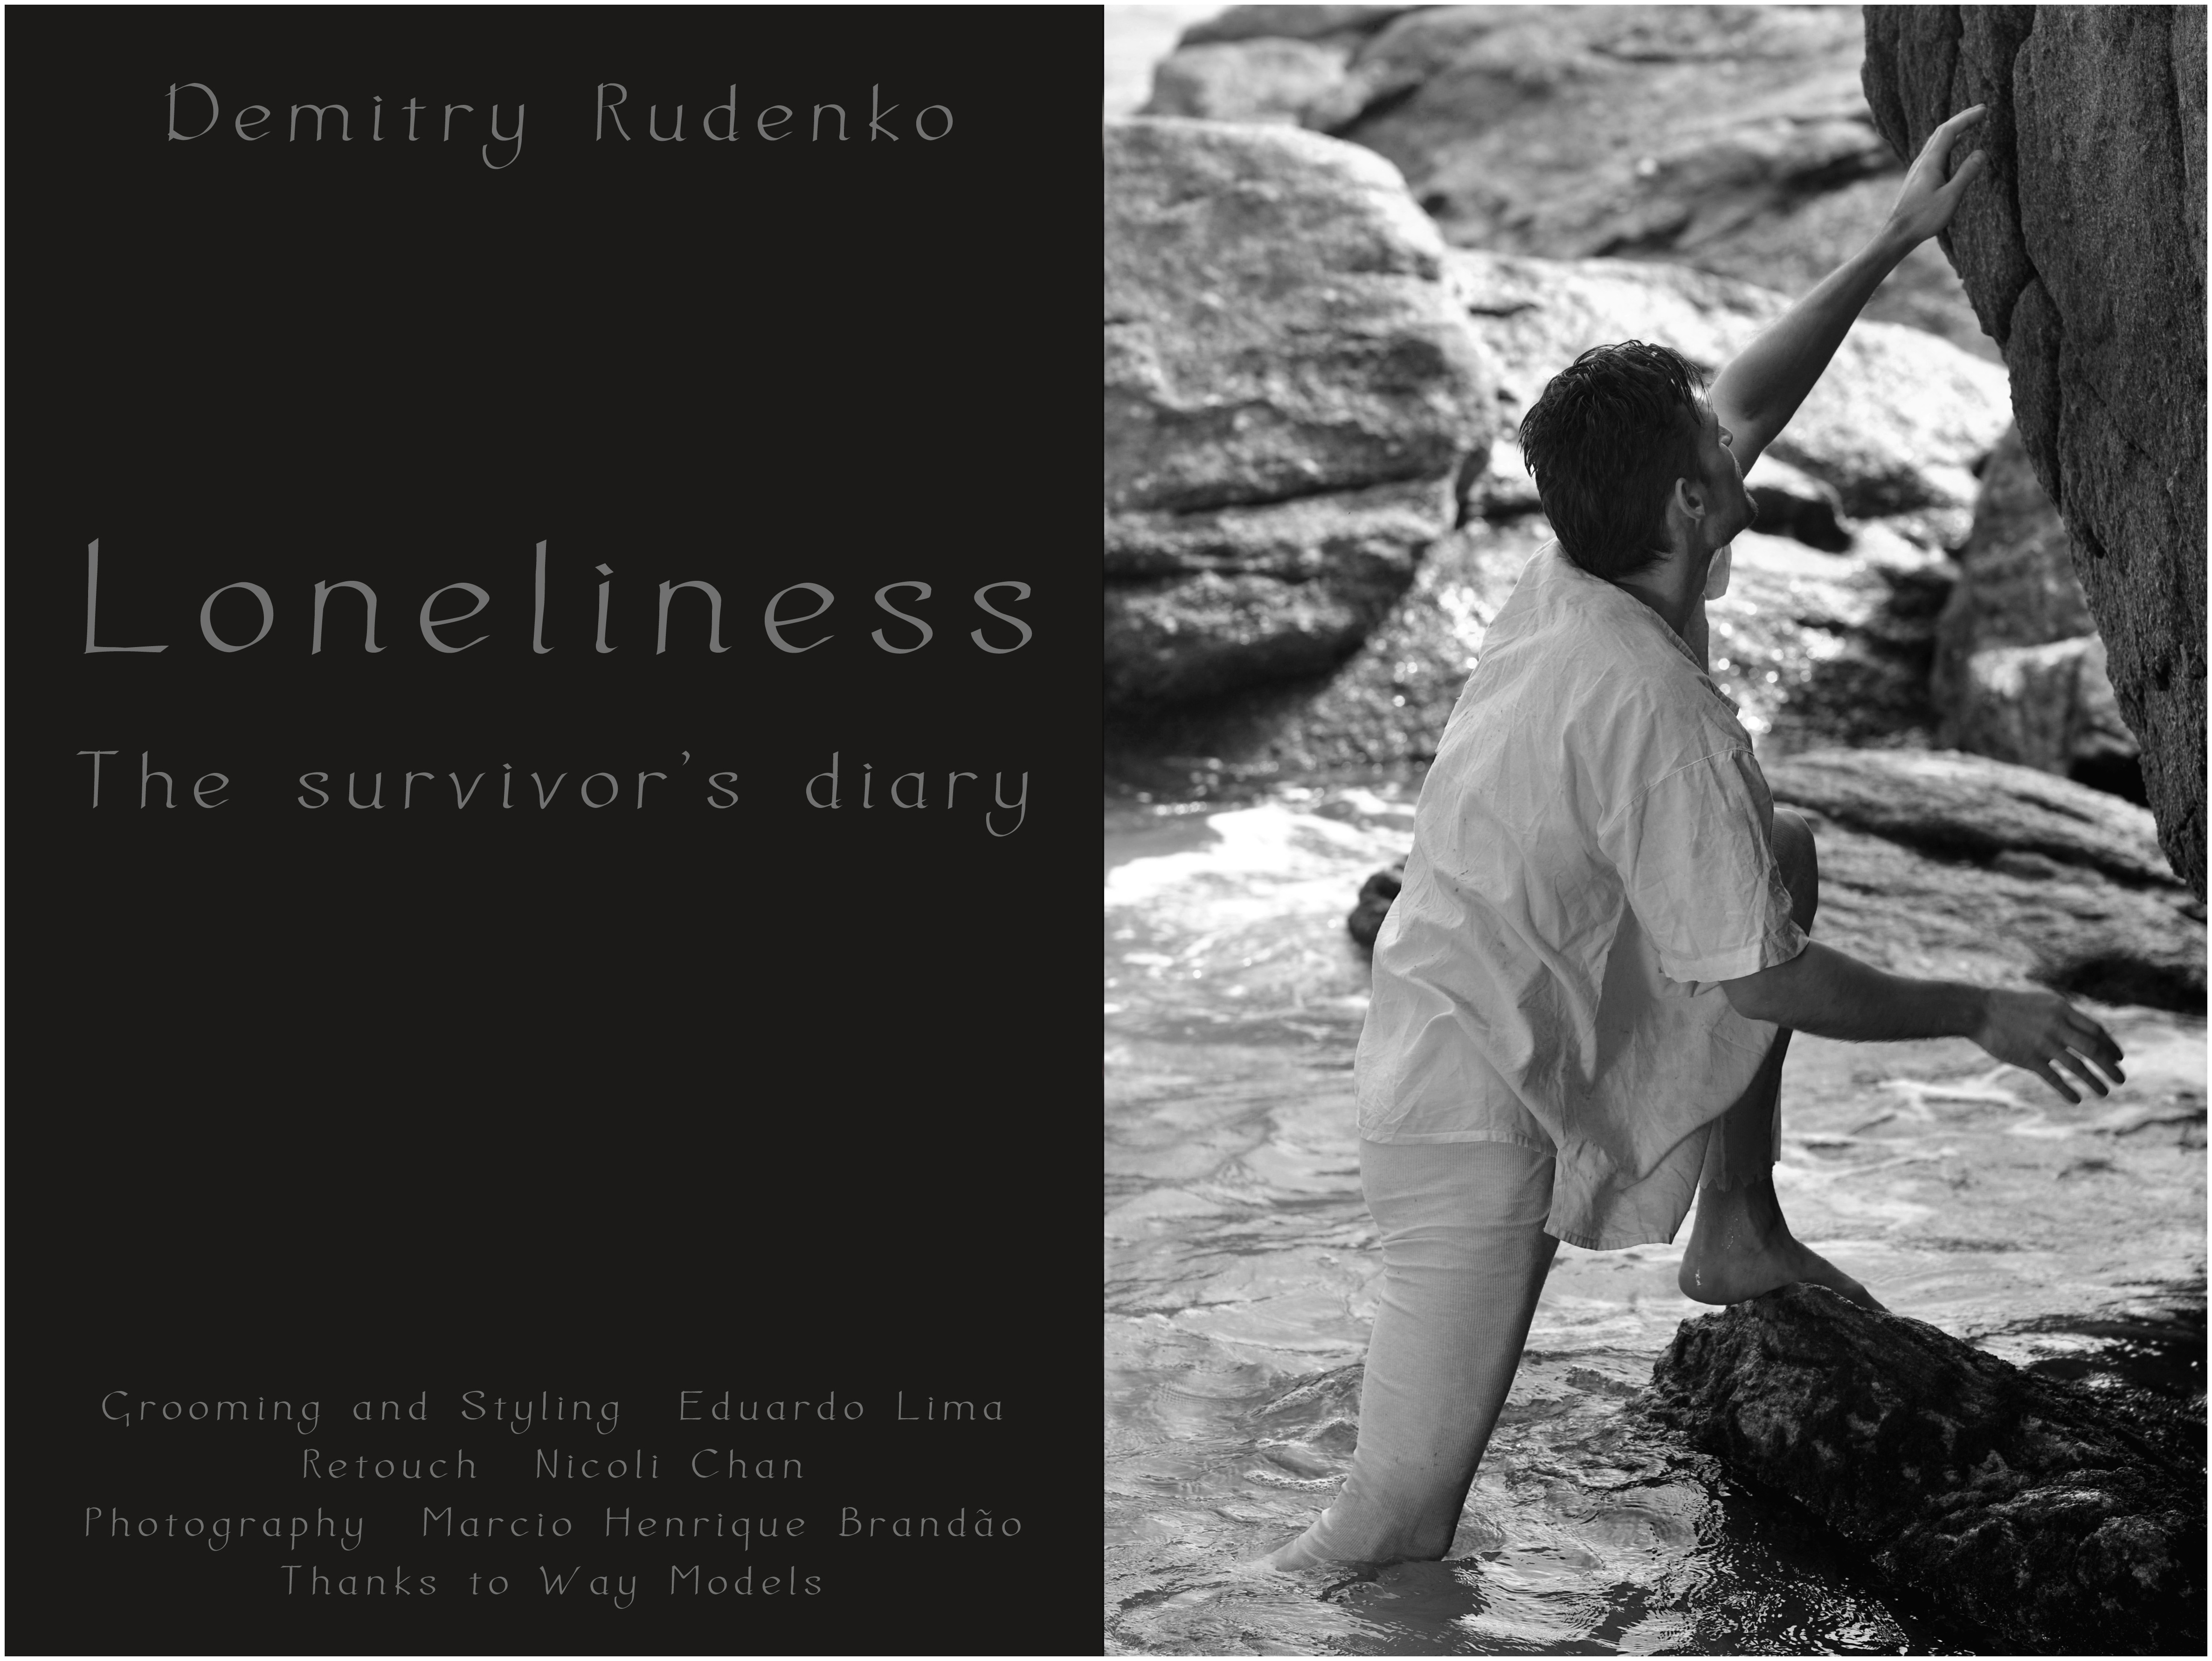 The Survivor's Diary: Demitry Rudenko by Marcio Henrique Brandao